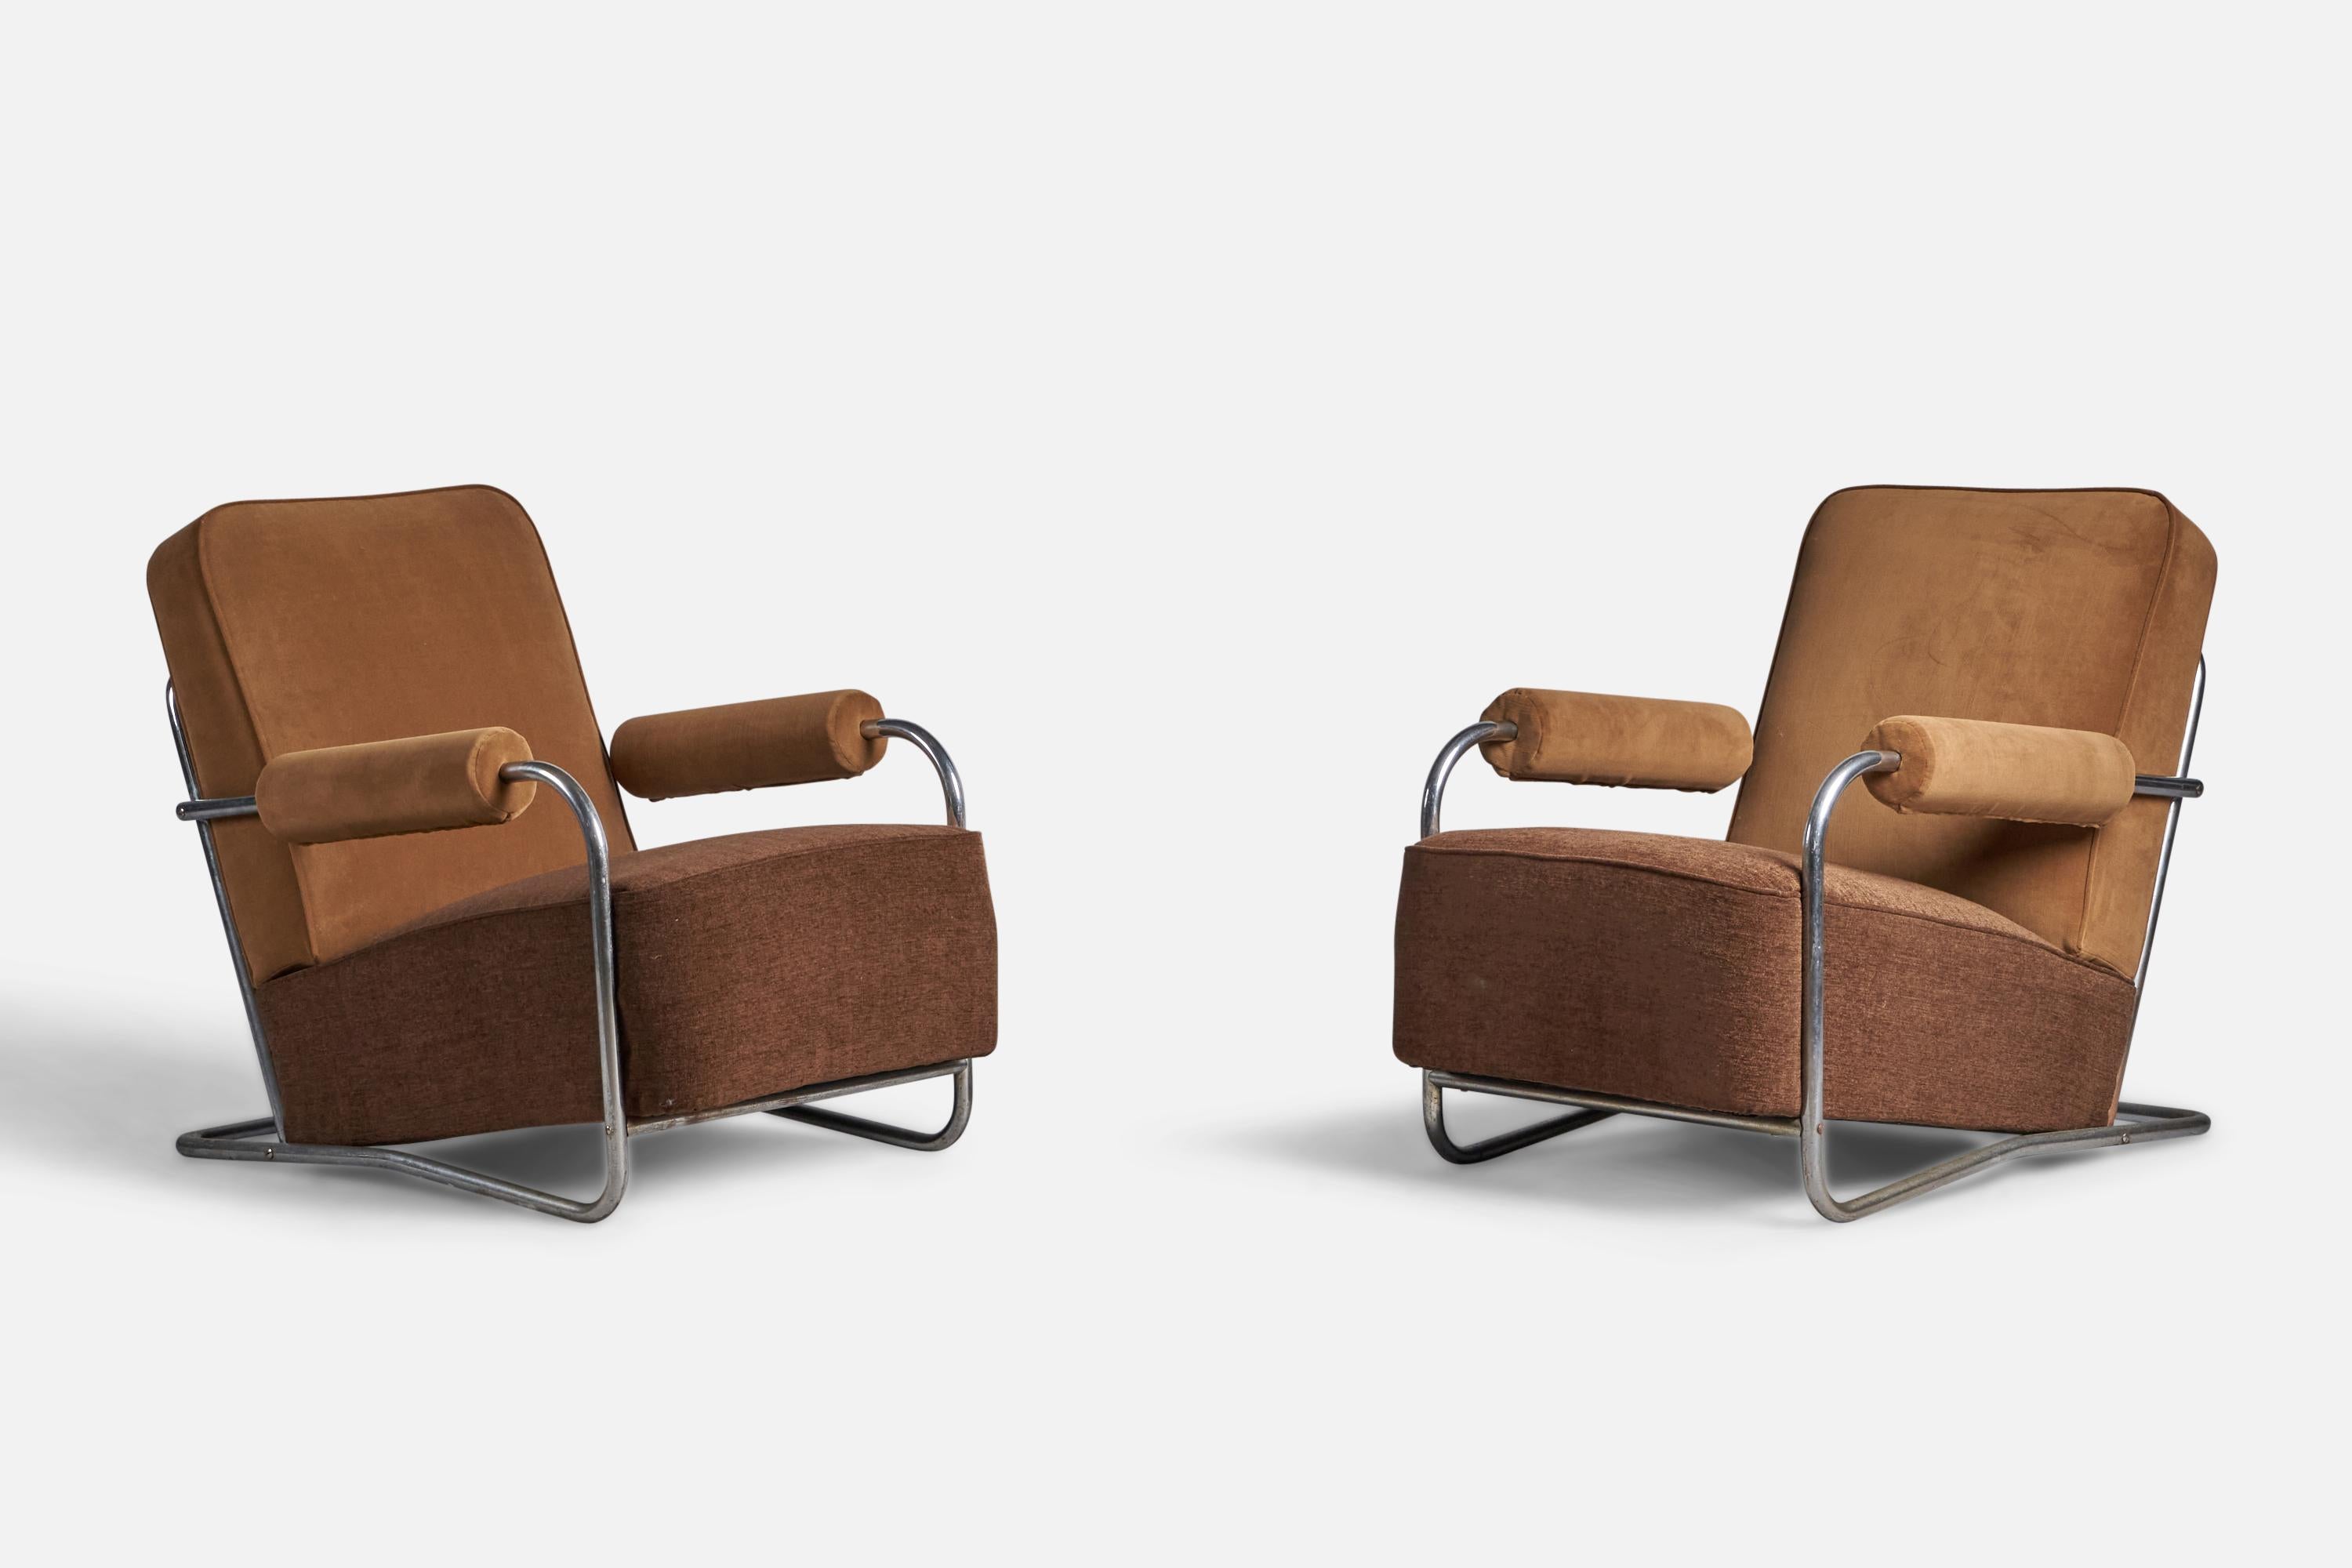 Paire de chaises longues en acier tubulaire, tissu marron et velours beige, conçues et produites aux États-Unis, années 1930.

Hauteur du siège de 17 pouces